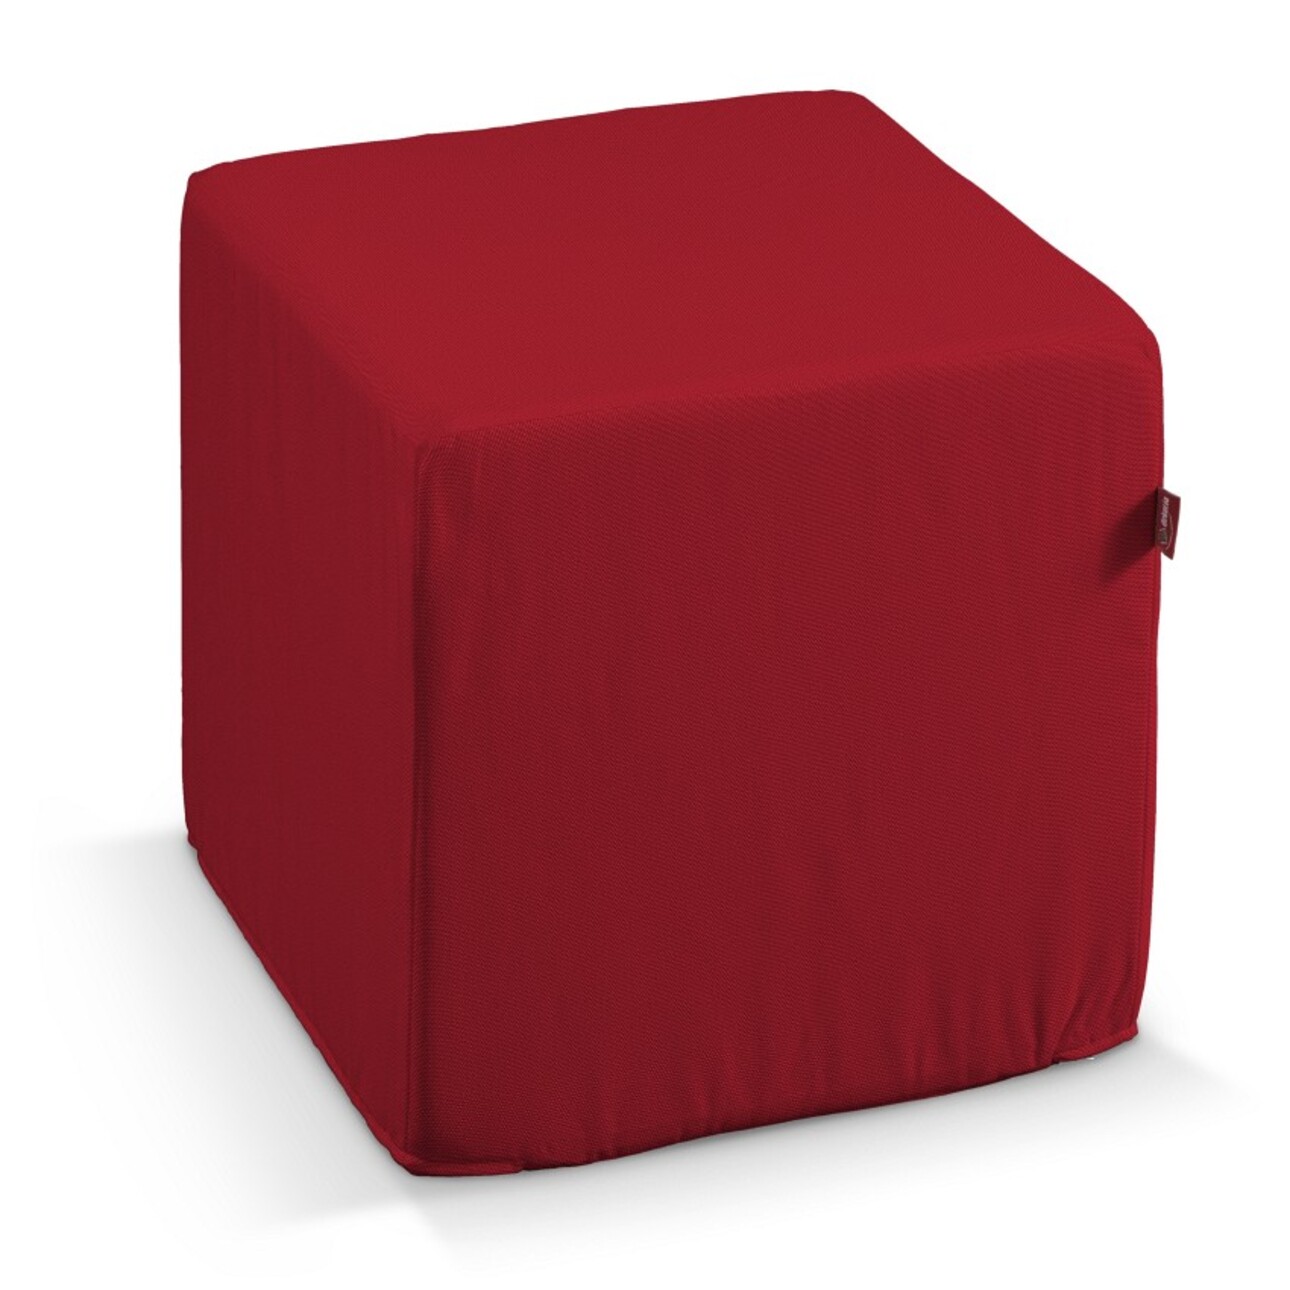 Bezug für Sitzwürfel, rot, Bezug für Sitzwürfel 40 x 40 x 40 cm, Etna (705- günstig online kaufen